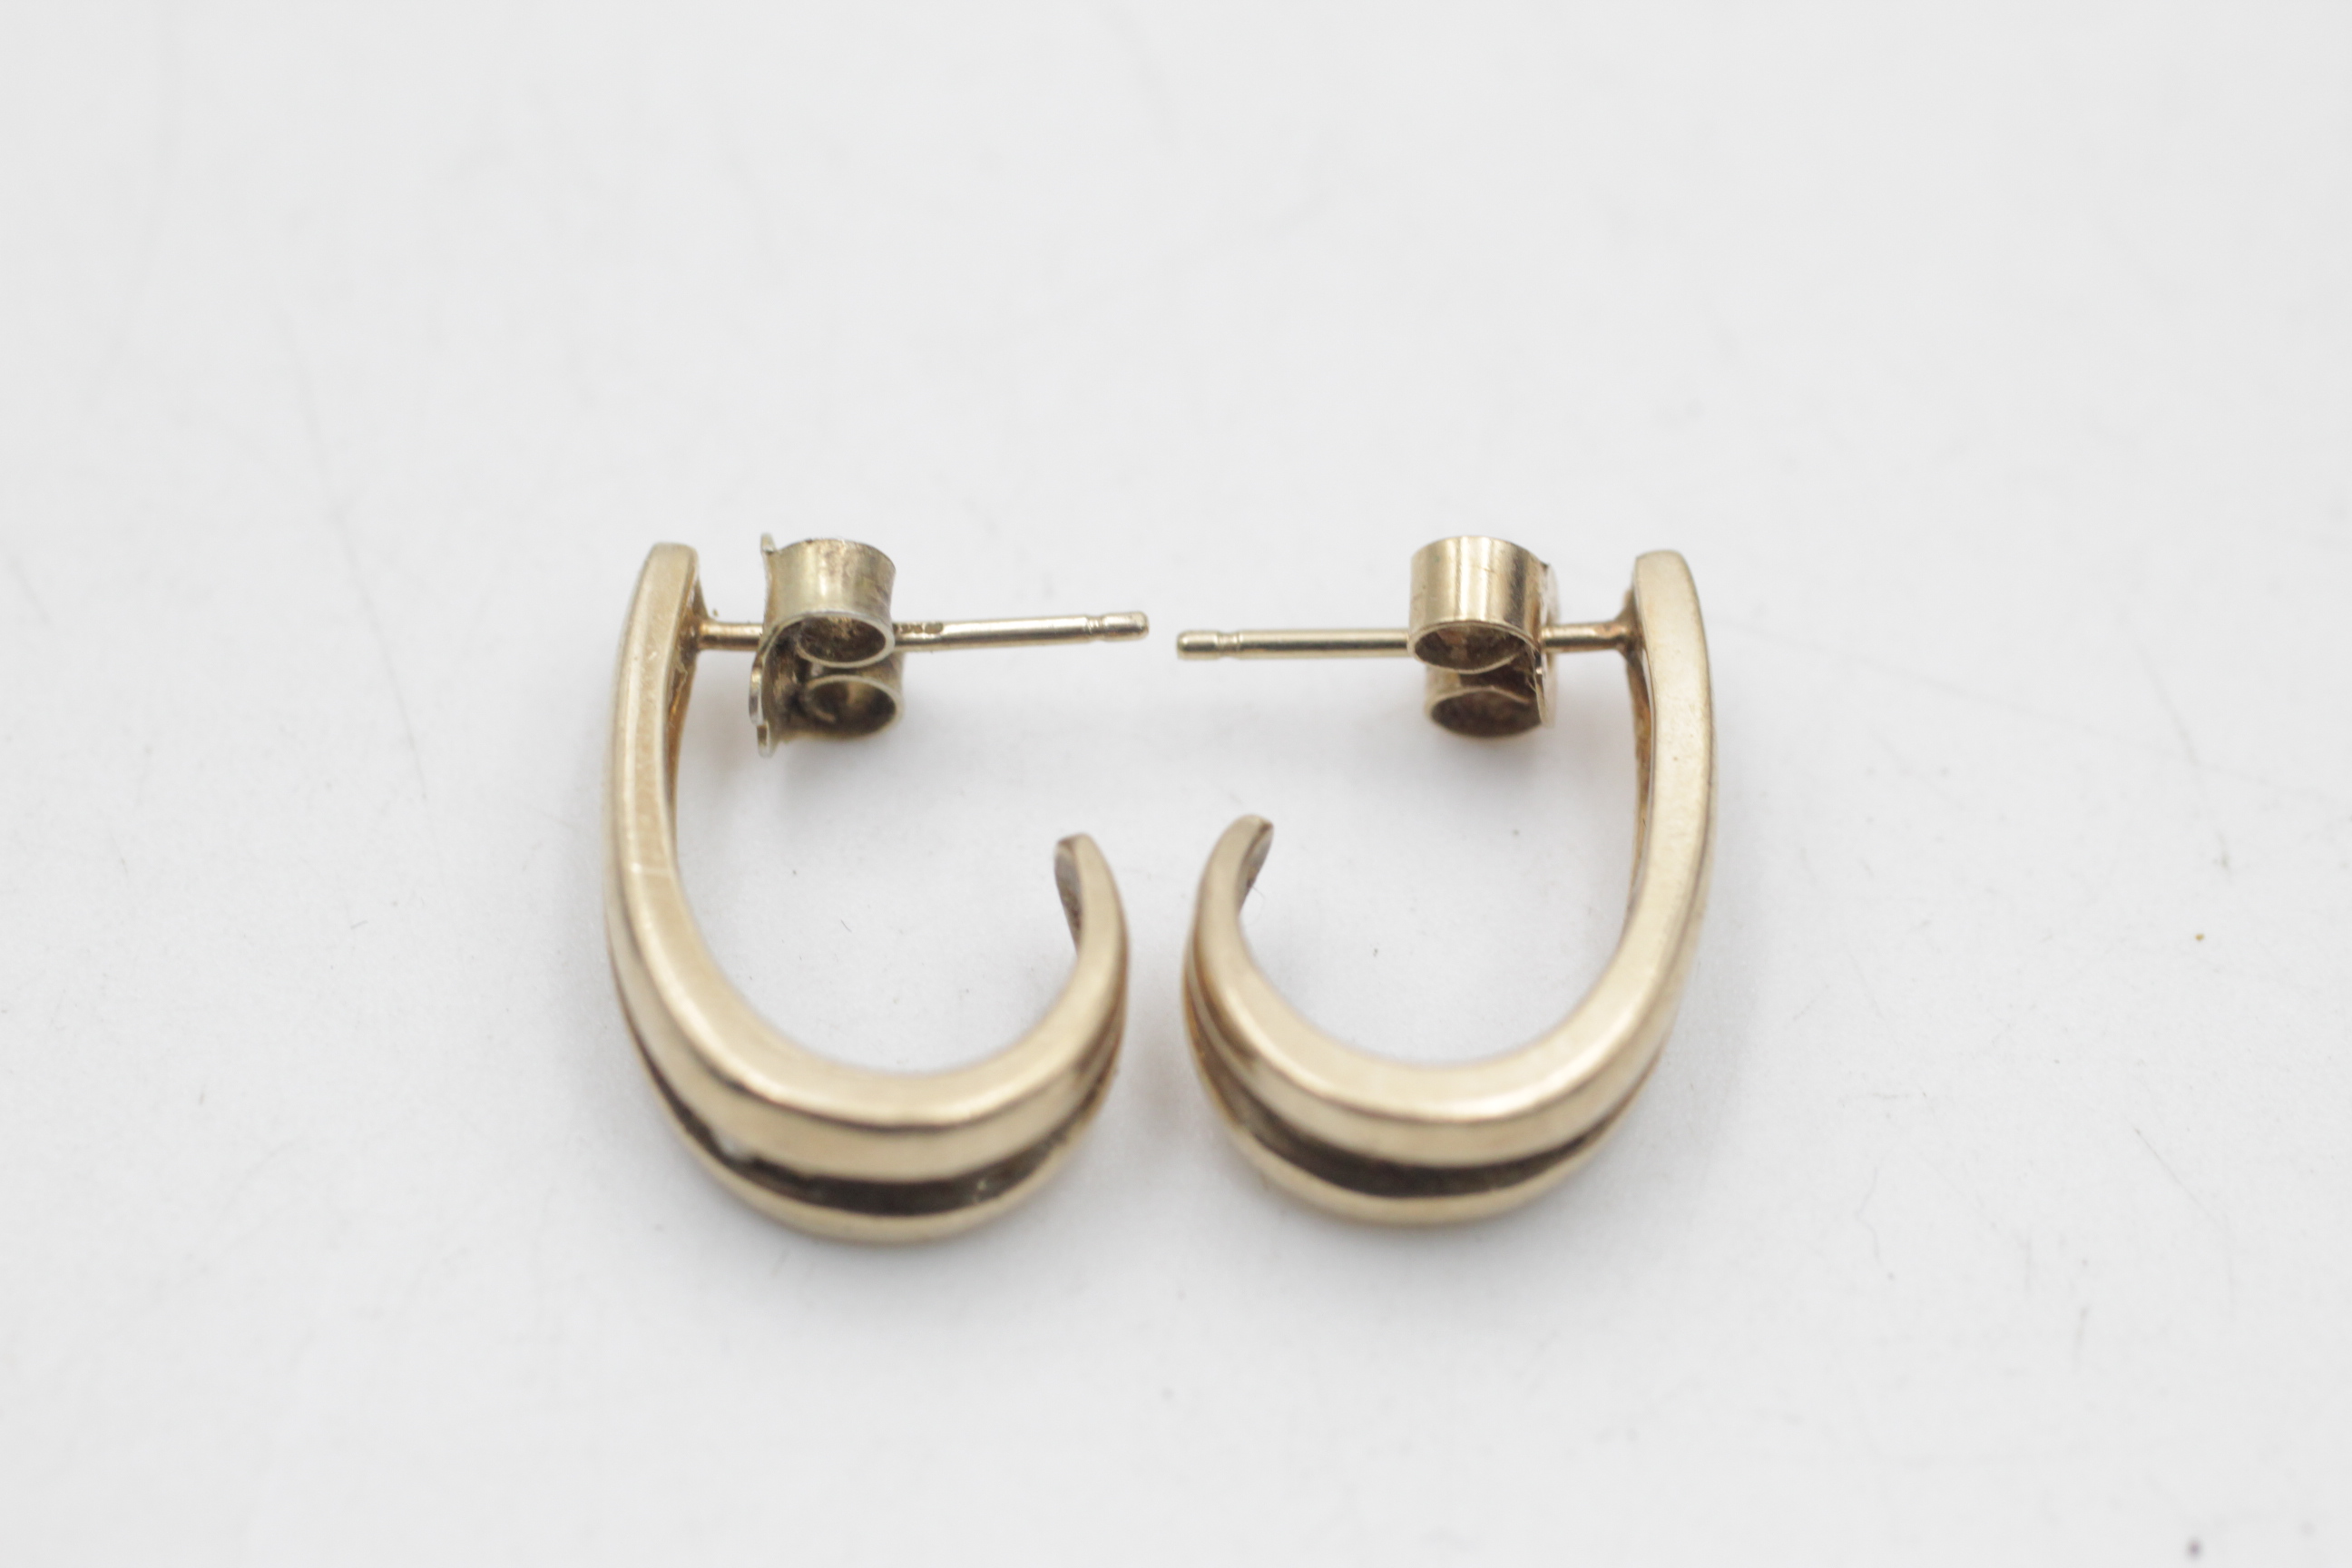 9ct gold vintage diamond channel half-hoop earrings (3.6g) - Image 4 of 6